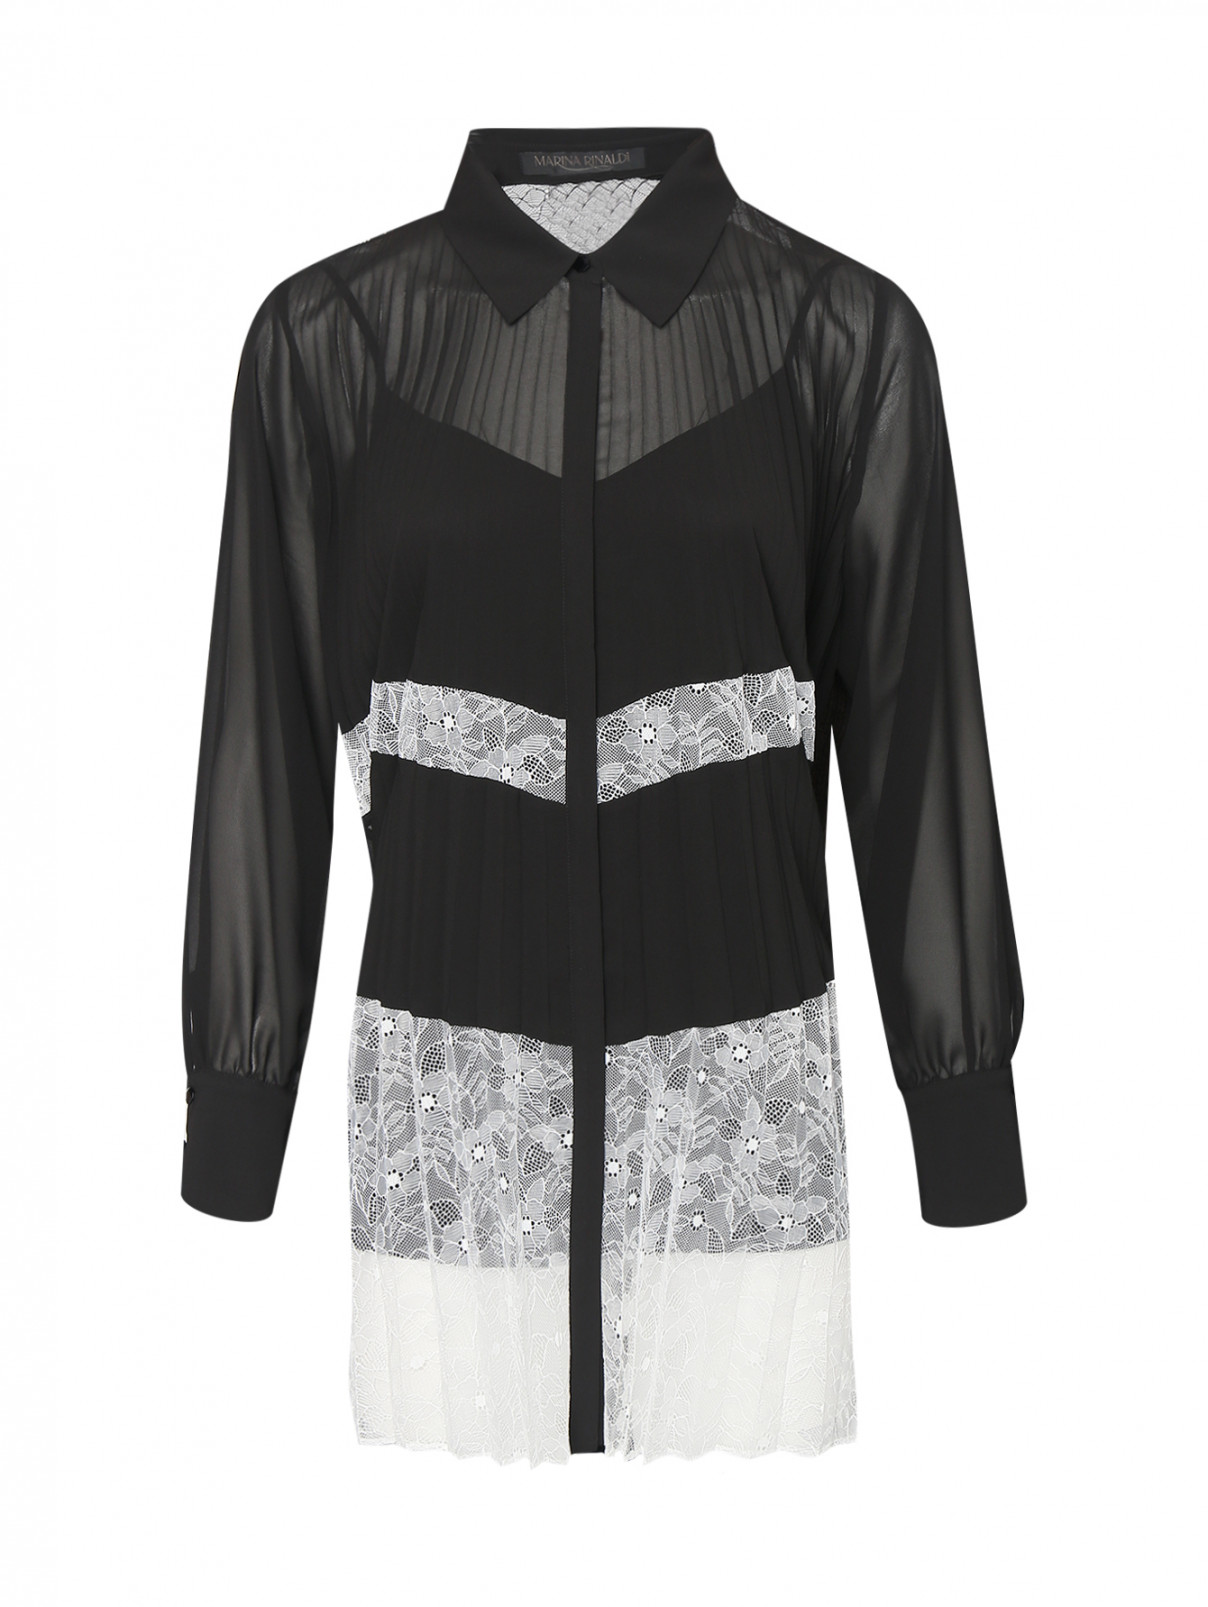 Ажурная блуза с длинными рукавами Marina Rinaldi  –  Общий вид  – Цвет:  Черный